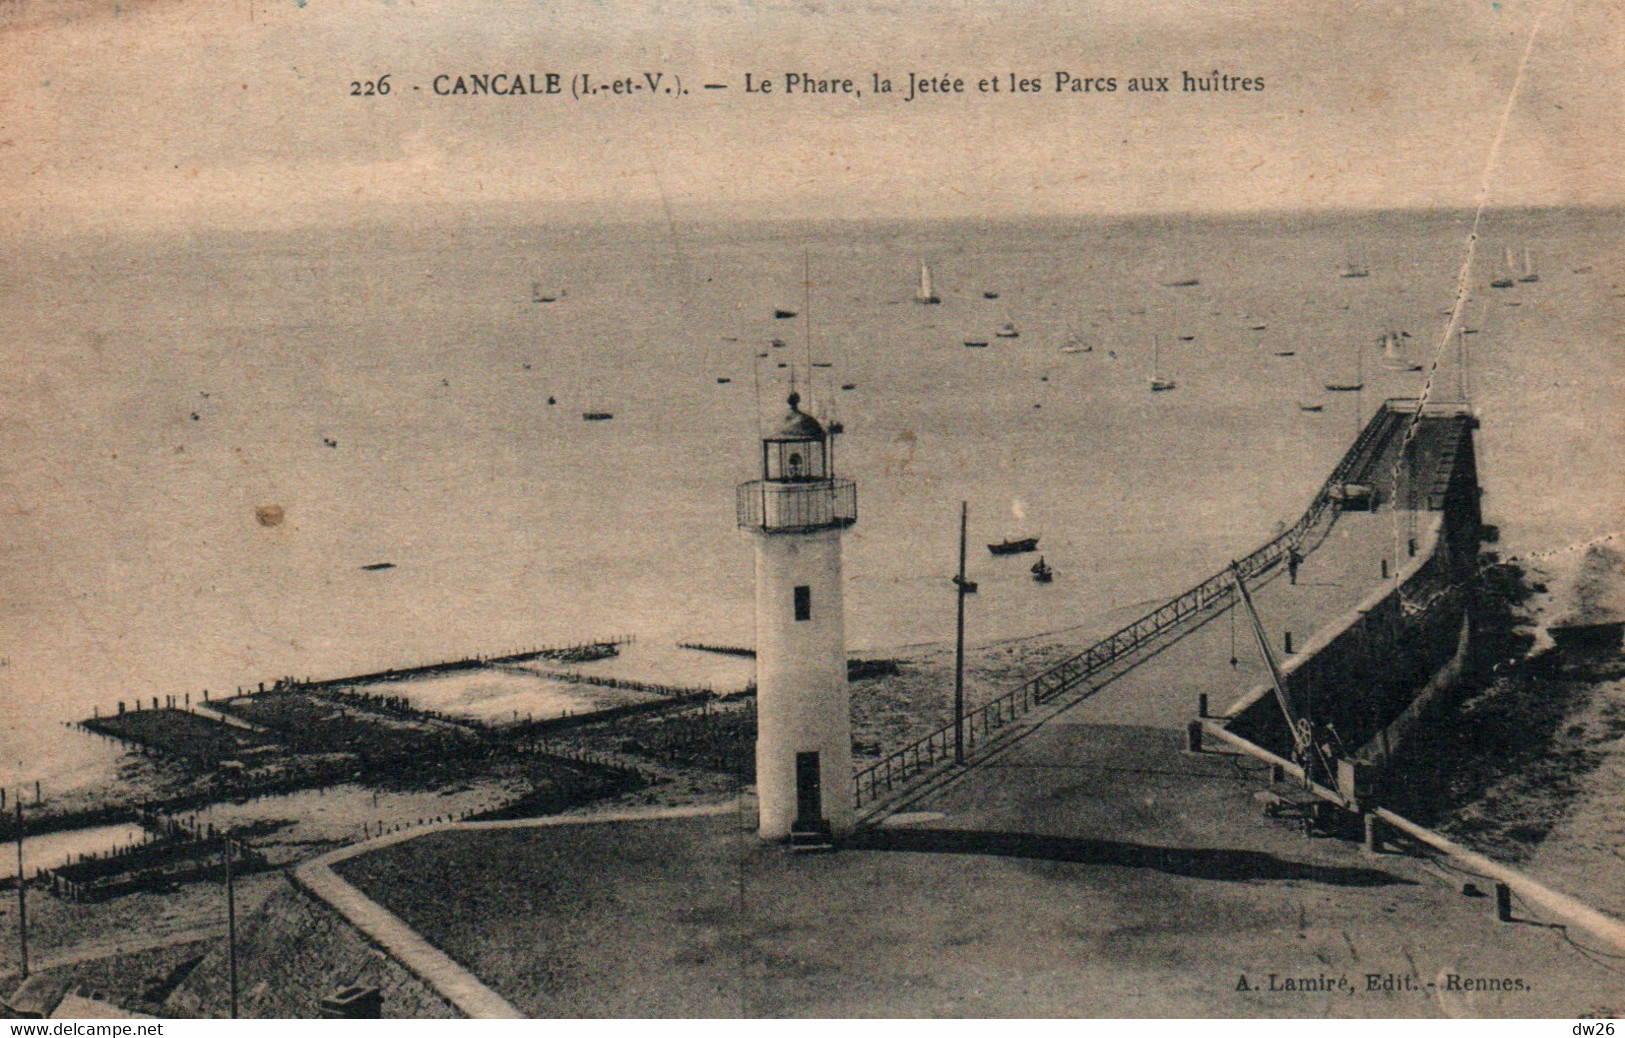 Cancale (Ile-et-Vilaine) Le Phare, La Jetée Et Les Parcs à Huîtres - Edition Lamire, Carte N° 226 - Phares